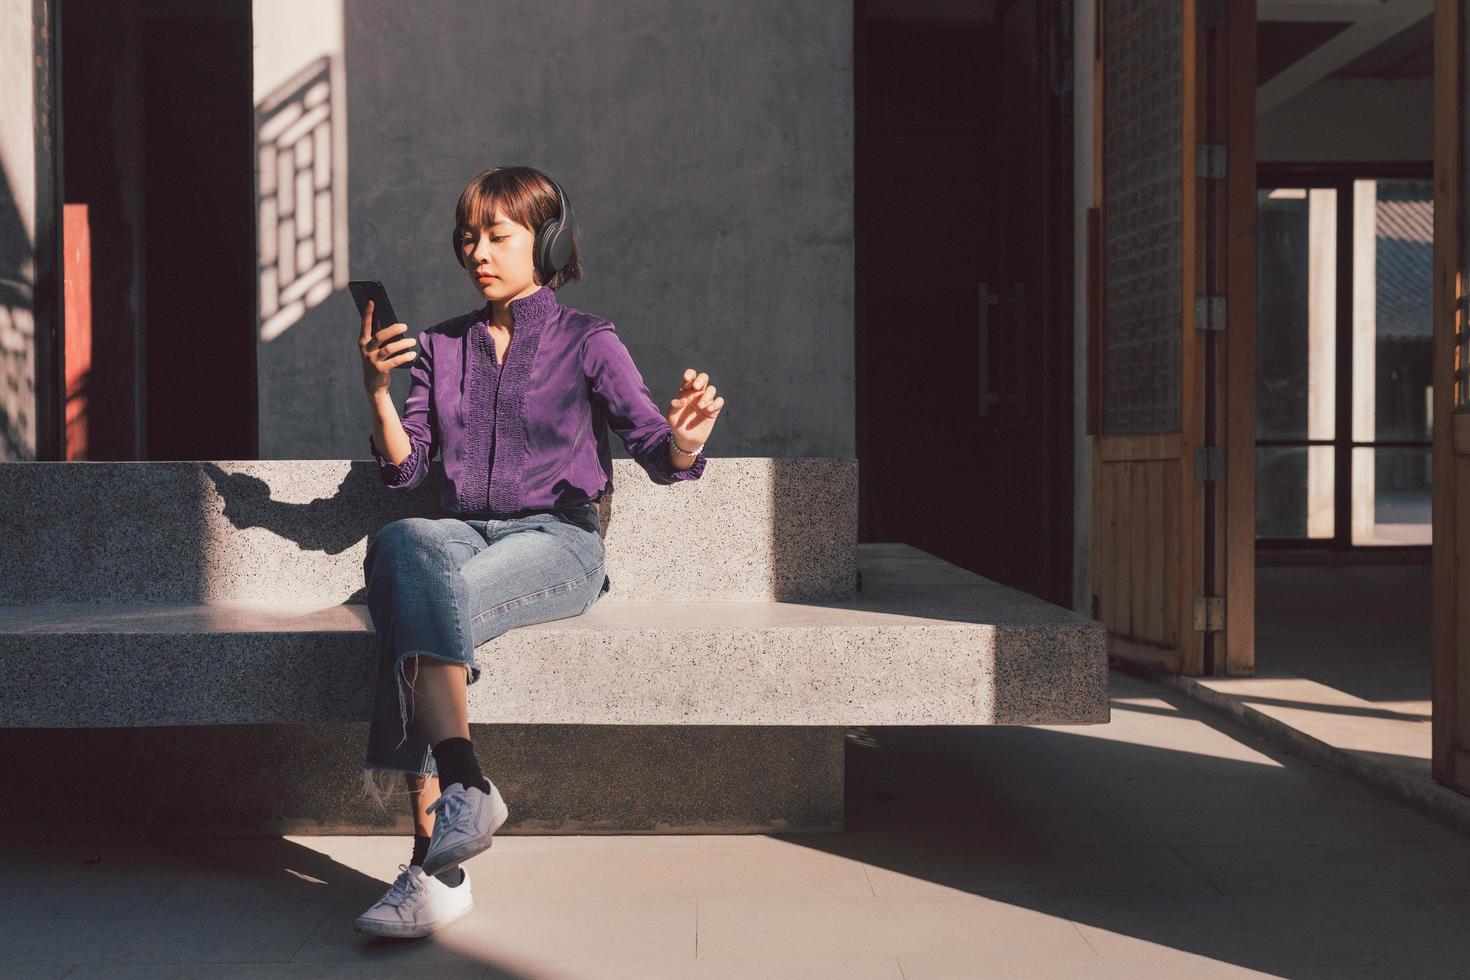 gelukkige jonge aziatische vrouw die naar muziek luistert met een koptelefoon foto